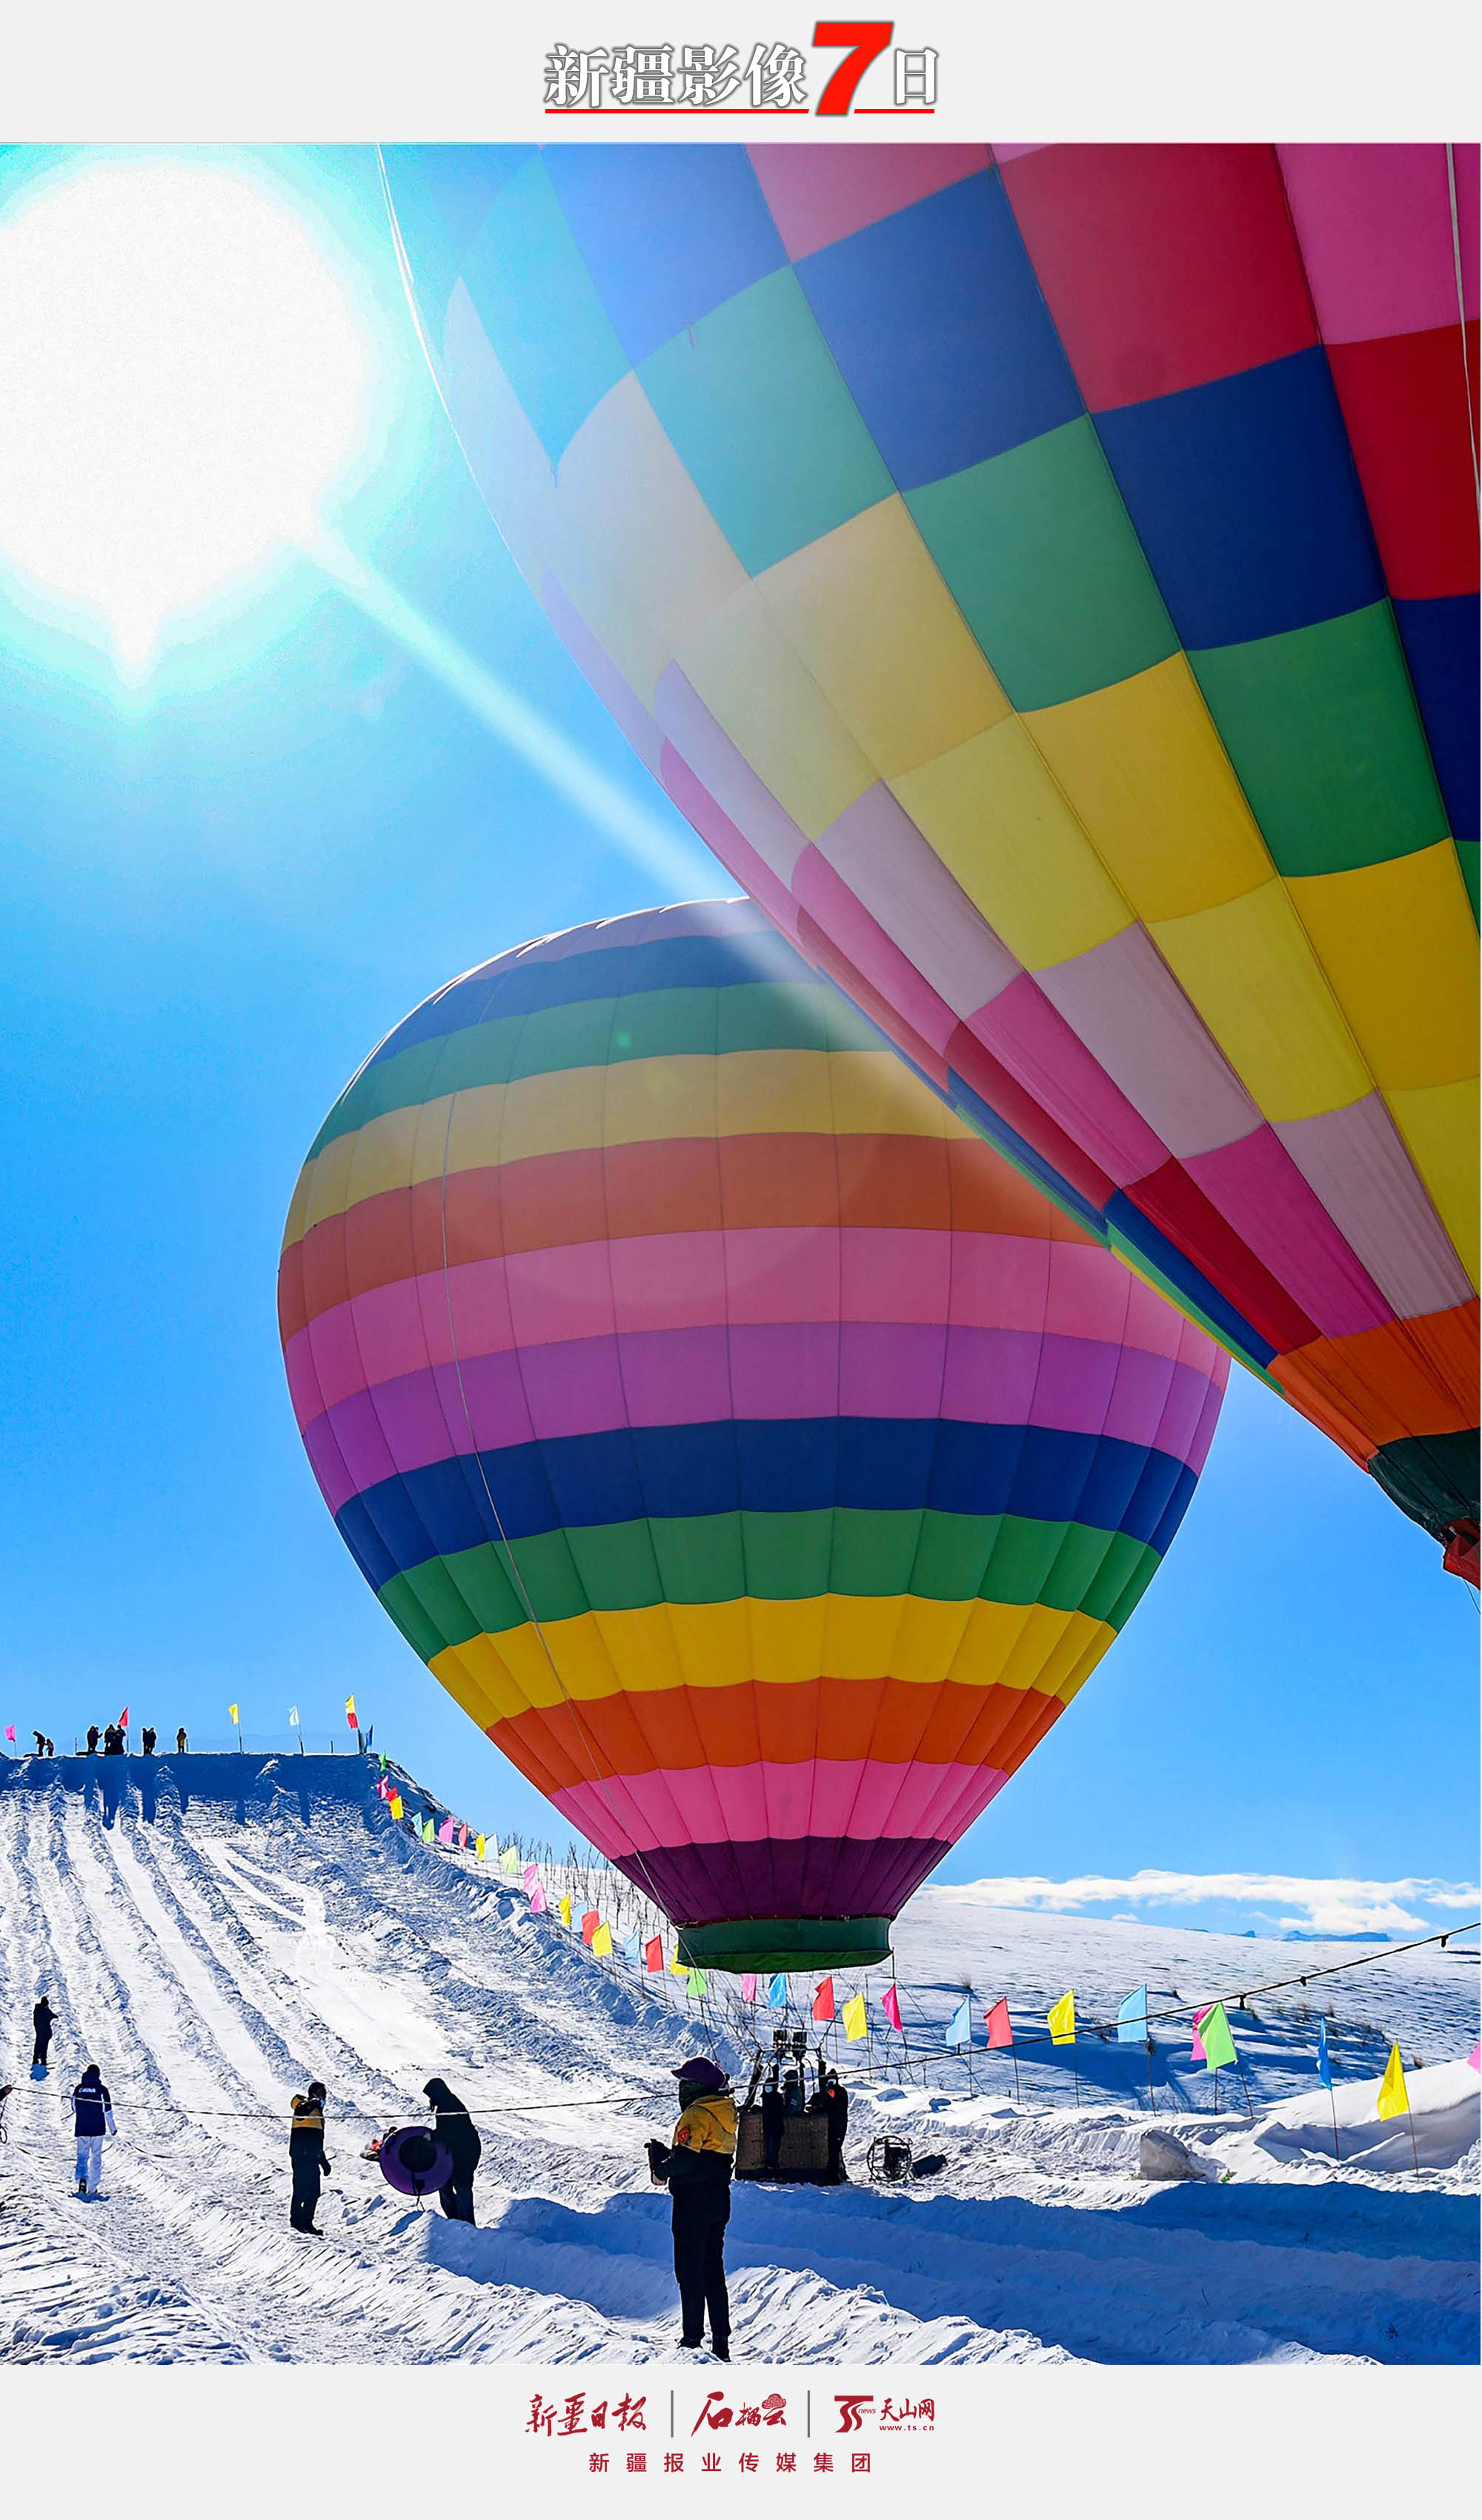 12月12日，热气球准备起飞。当日，木垒哈萨克自治县启动第二届冰雪旅游嘉年华系列活动，吸引不少游客参与，尽享冰雪旅游带来的乐趣。石榴云/新疆日报记者李瑞摄